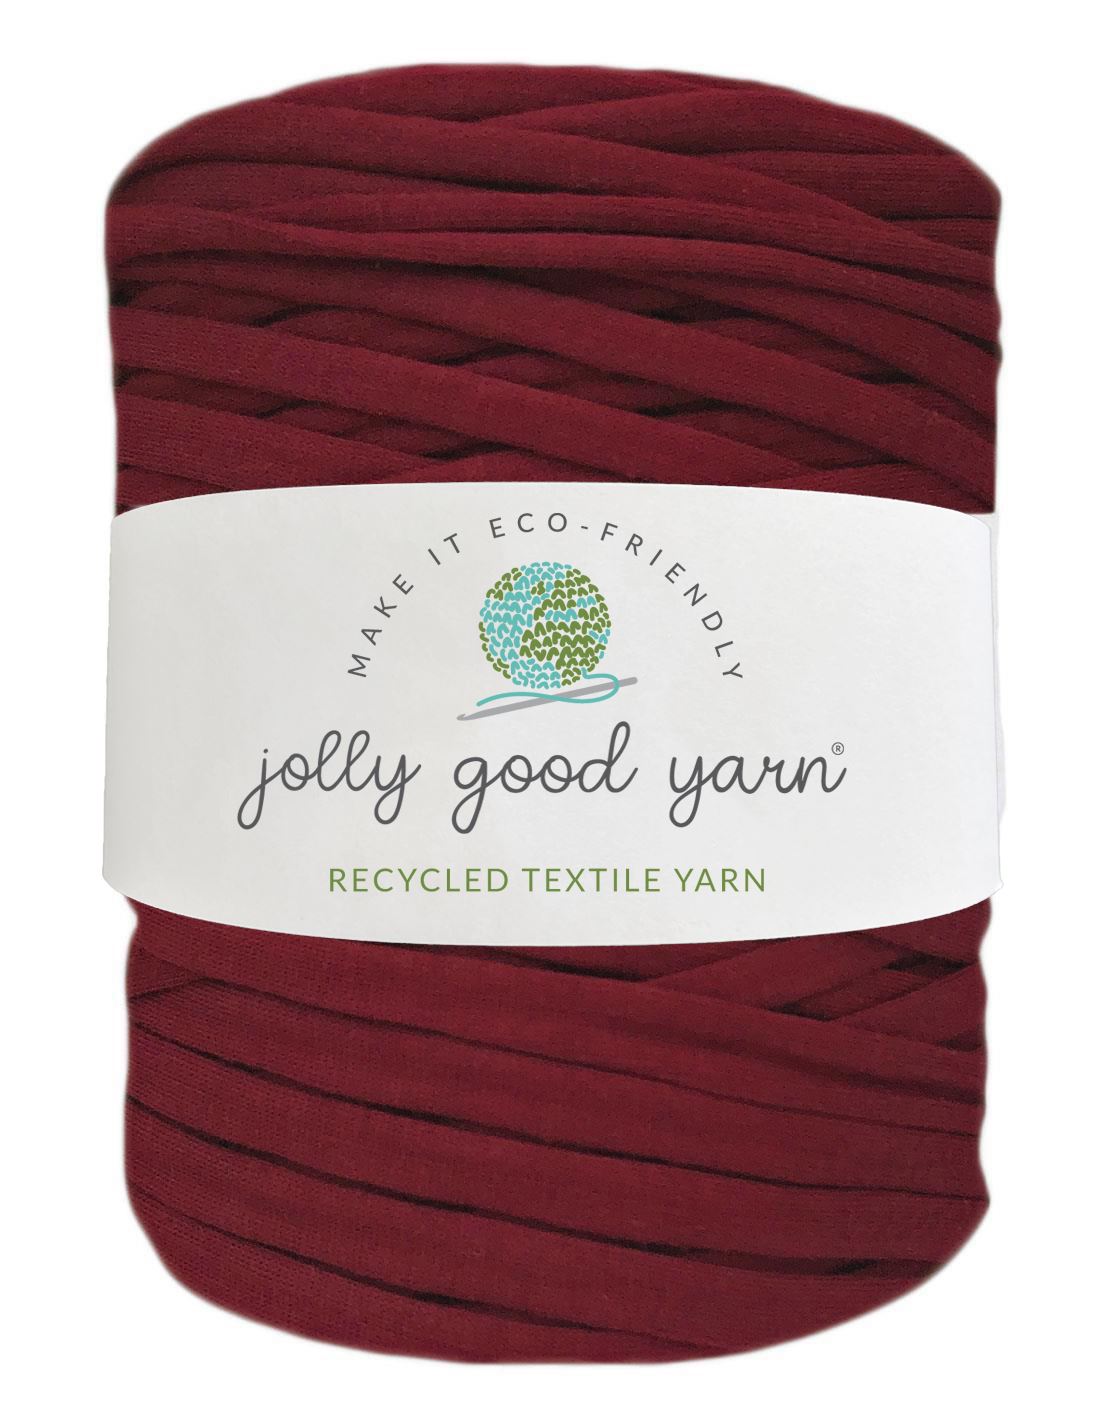 Wine red t-shirt yarn (100-120m)